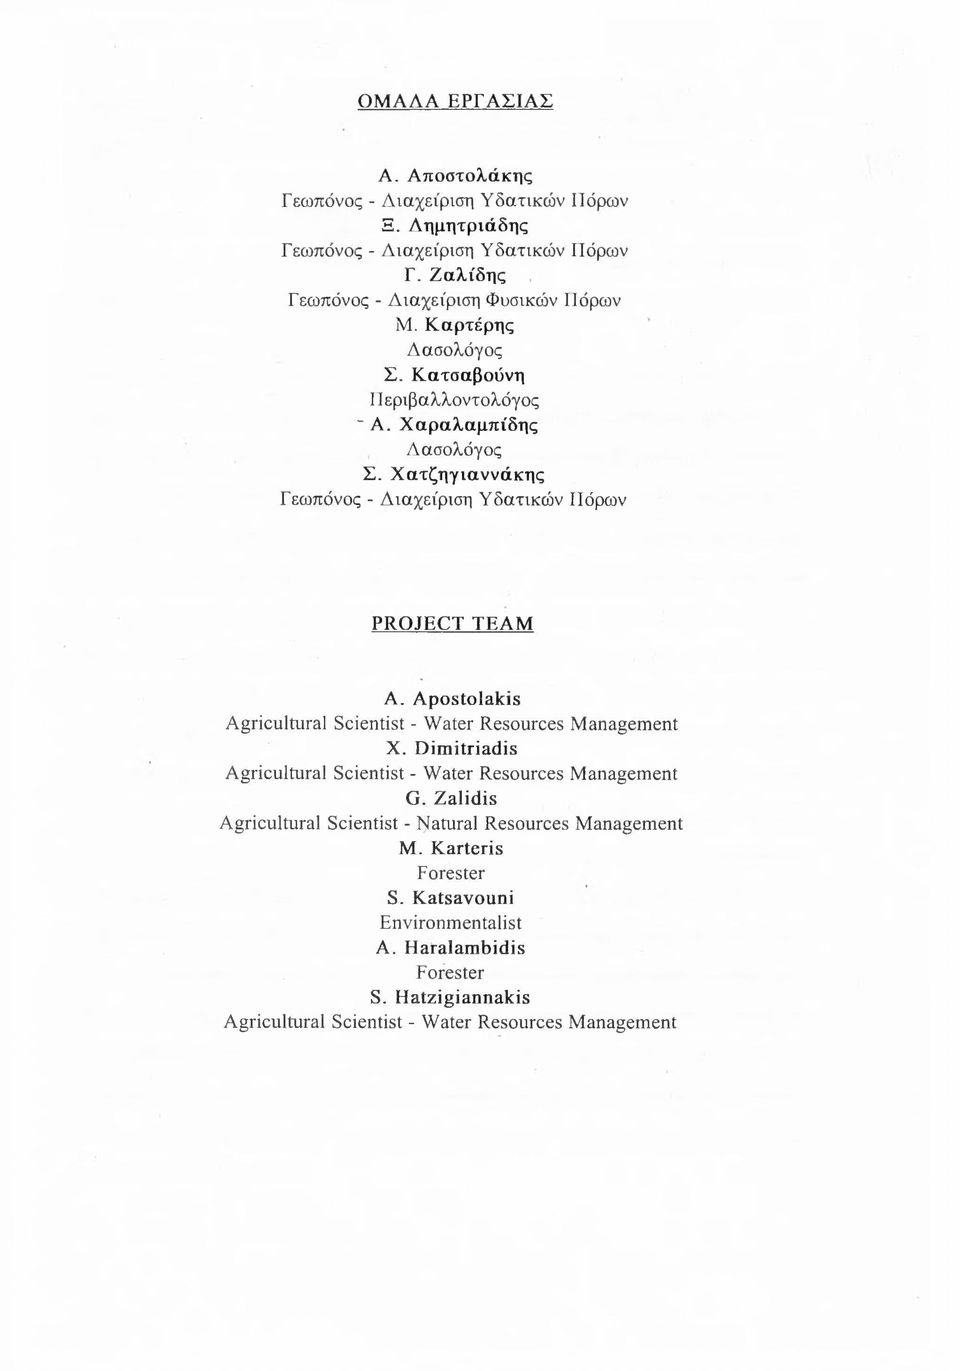 Χατζηγιαννάκης Γεωπόνος - Διαχείριση Υδατικών Πόρων PROJECT TEAM A. Apostolakis Agricultural Scientist - Water Resources Management X.